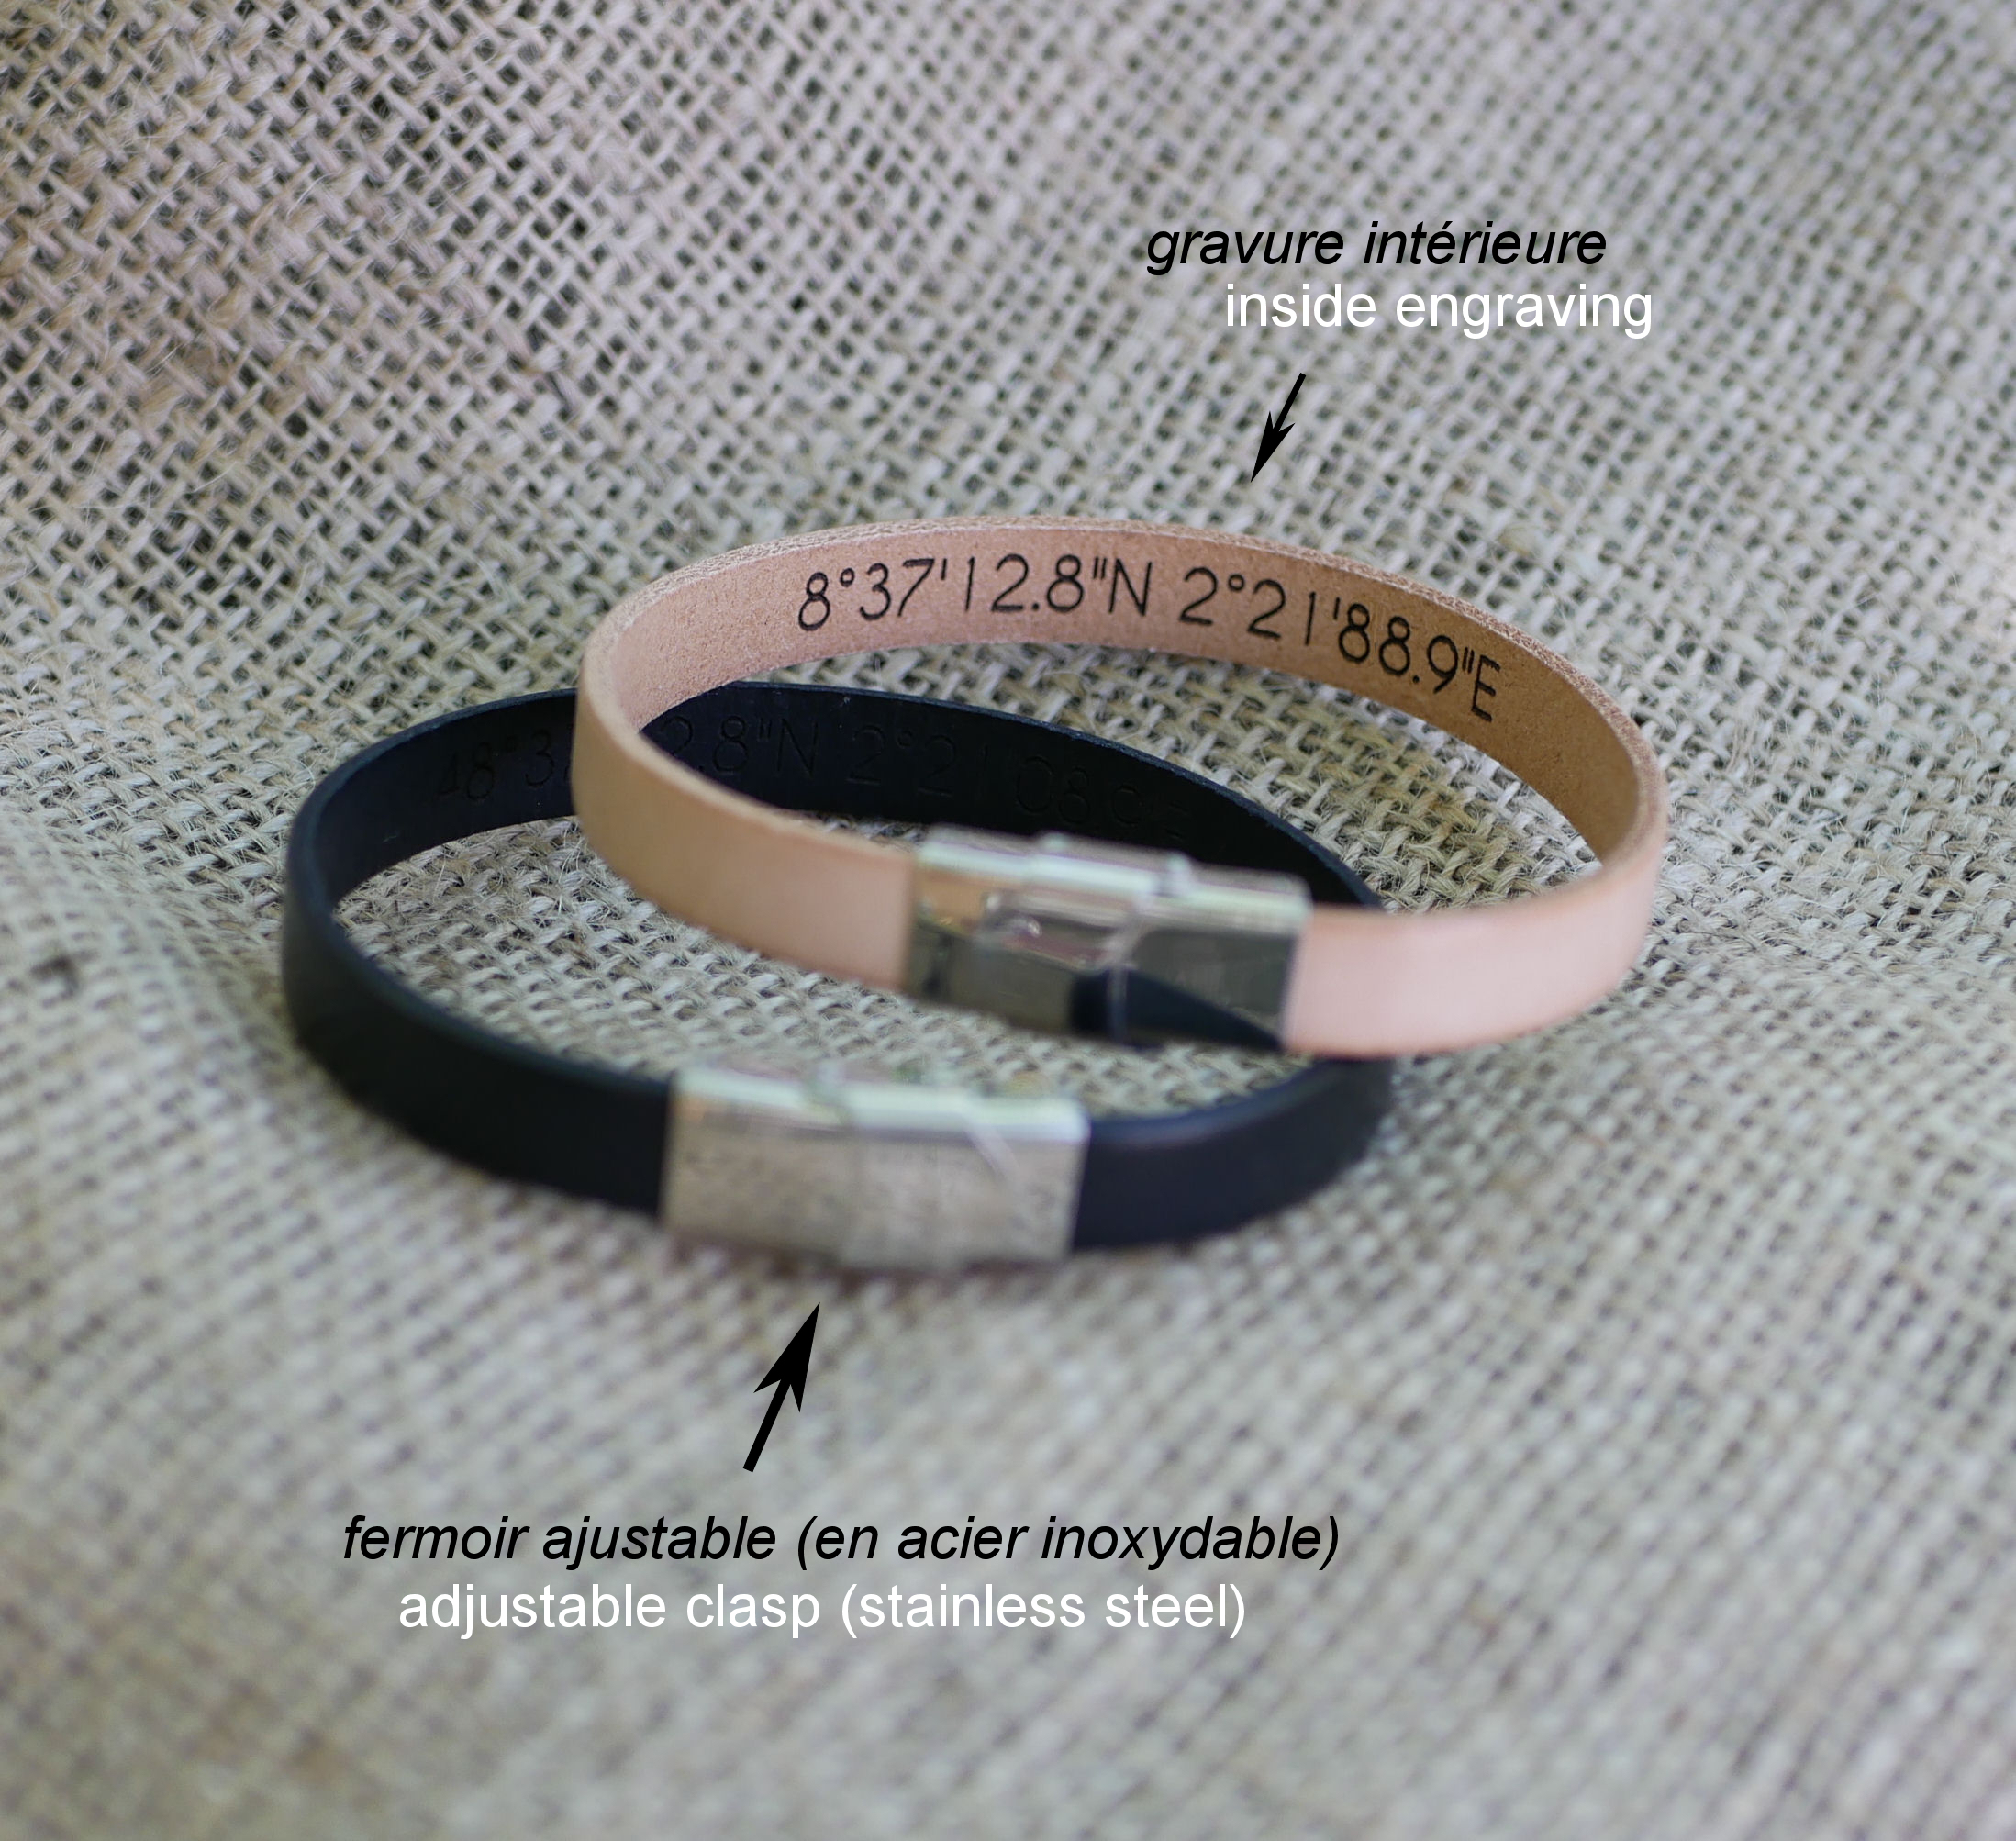 Regalo gourmet para parejas: 2 pulseras de cuero personalizadas mediante grabado 